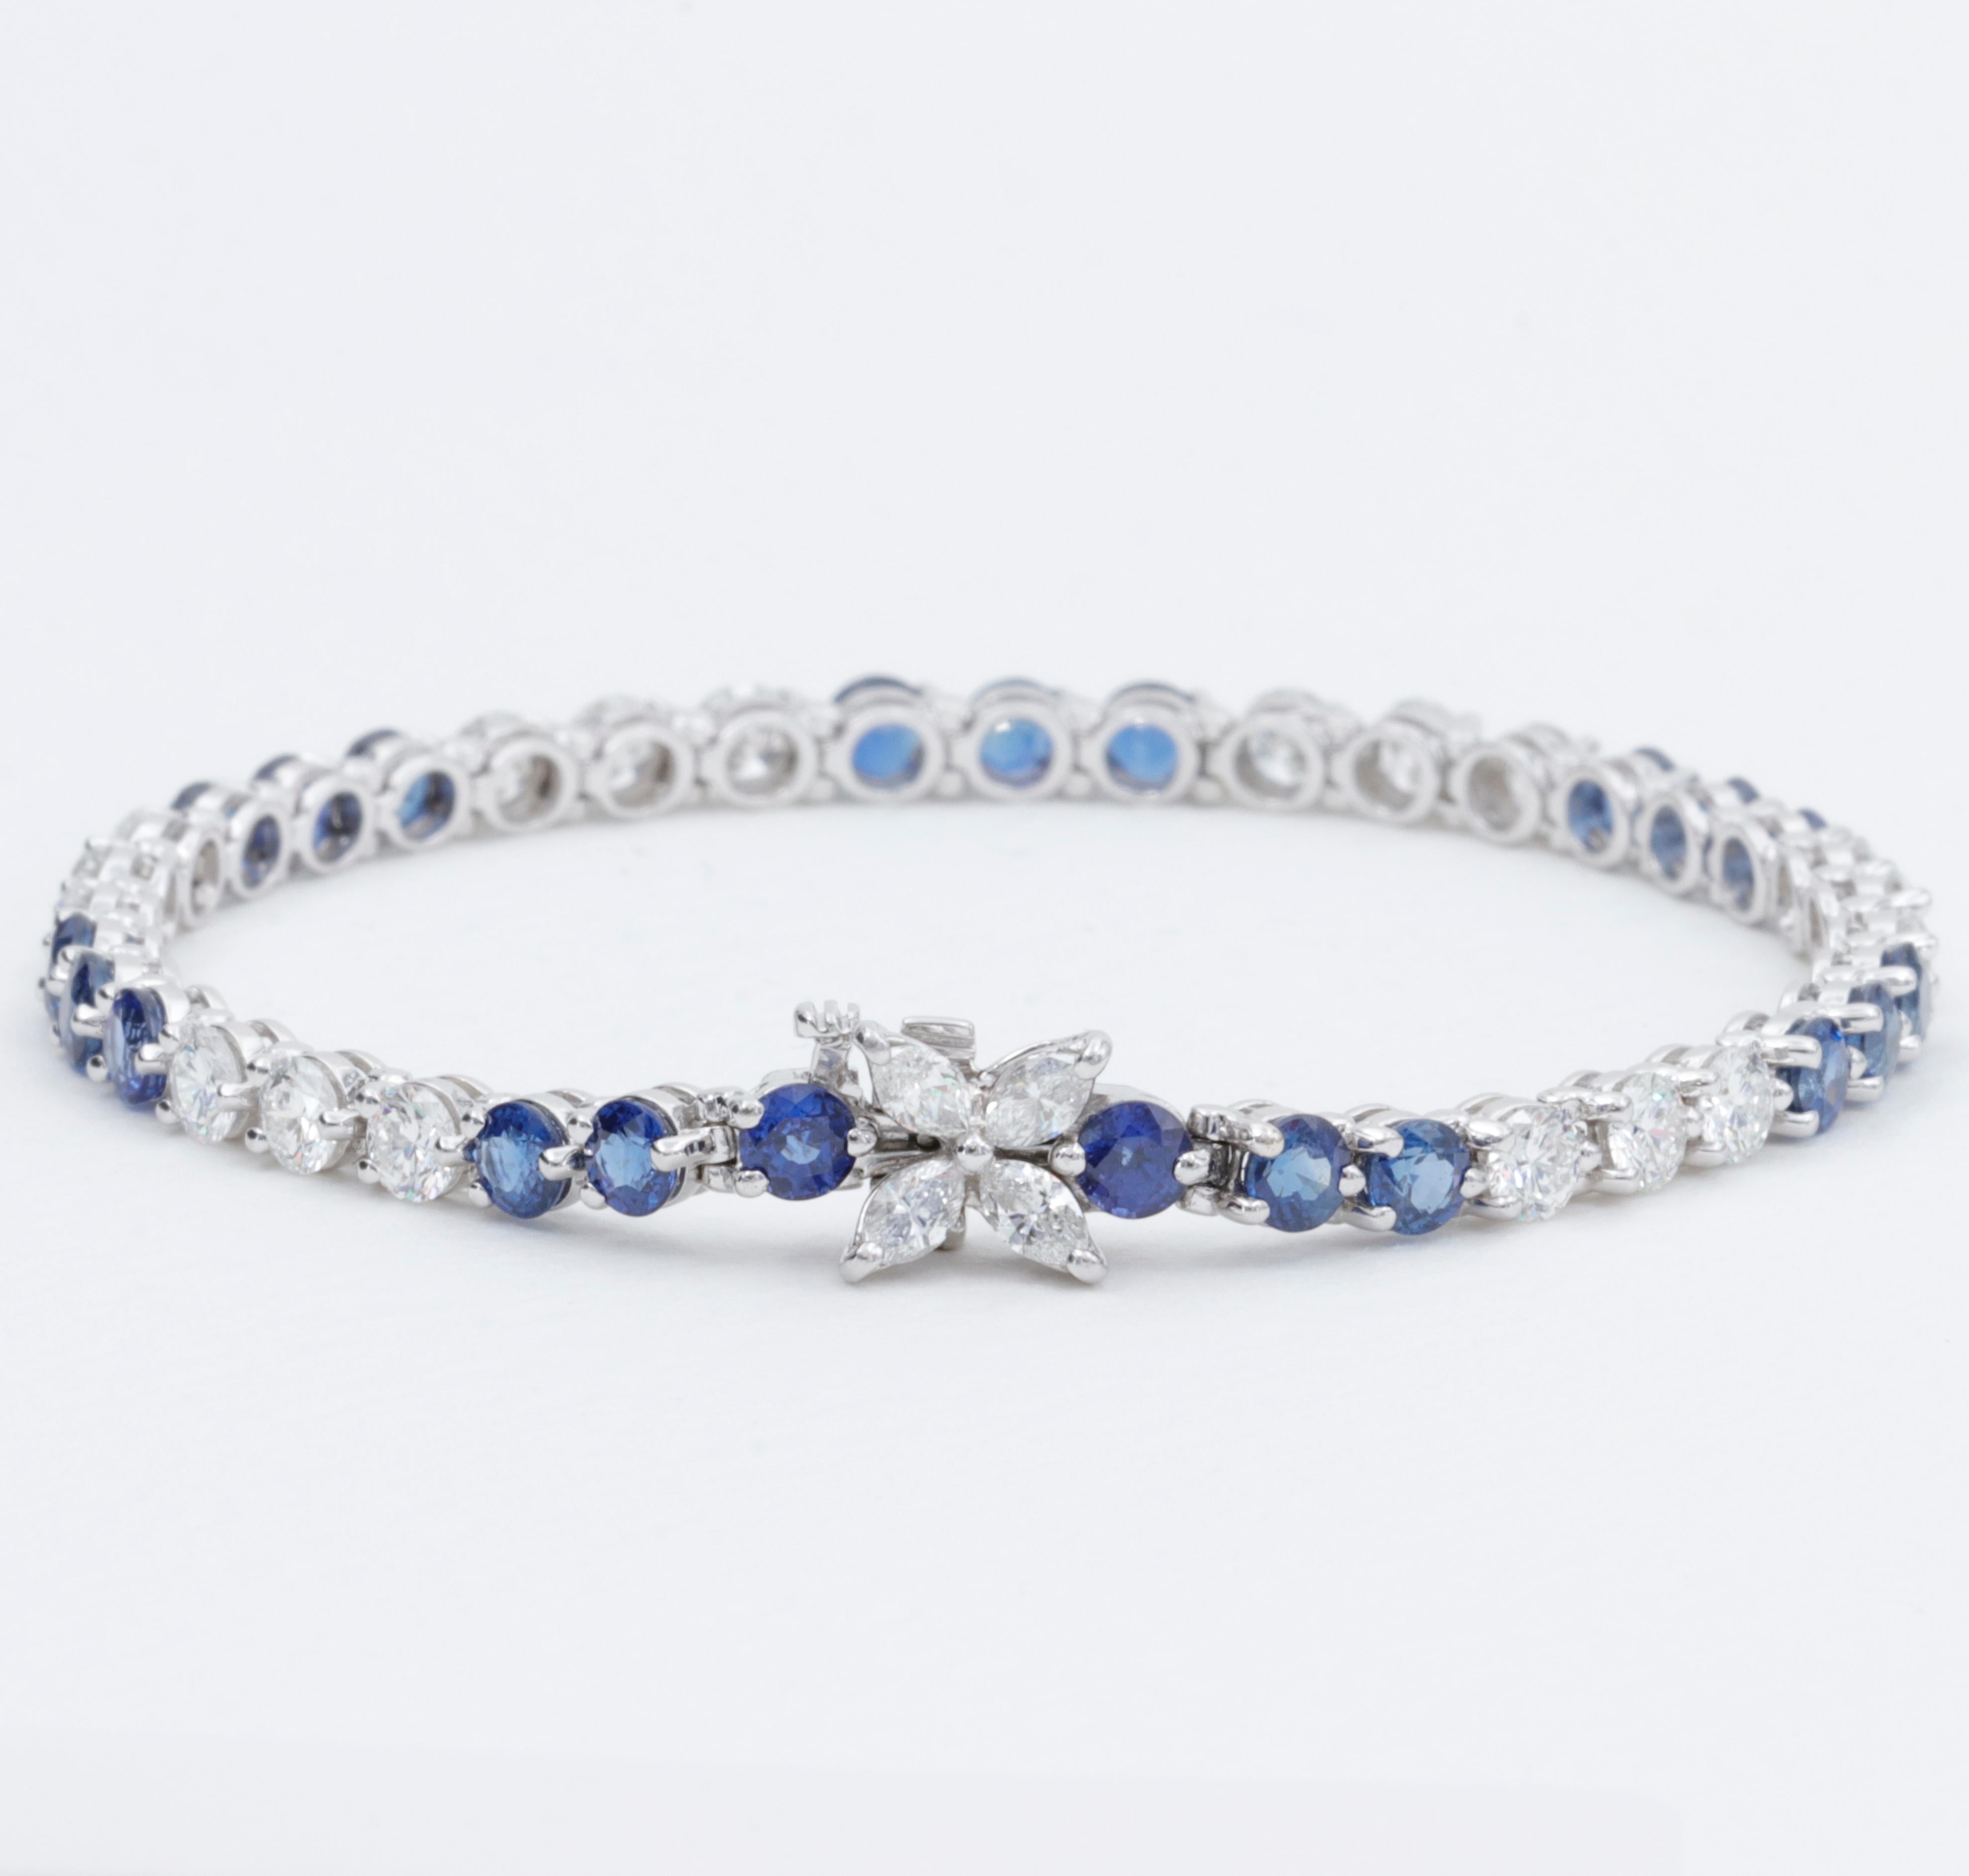 Design emblématique de Tiffany & Co., le bracelet Victoria est doté d'un fermoir à motif de 4 diamants taillés en marquise, qui réunit des saphirs bleus royaux et des diamants de très belle qualité, taillés en rond et de taille brillante. 

Les